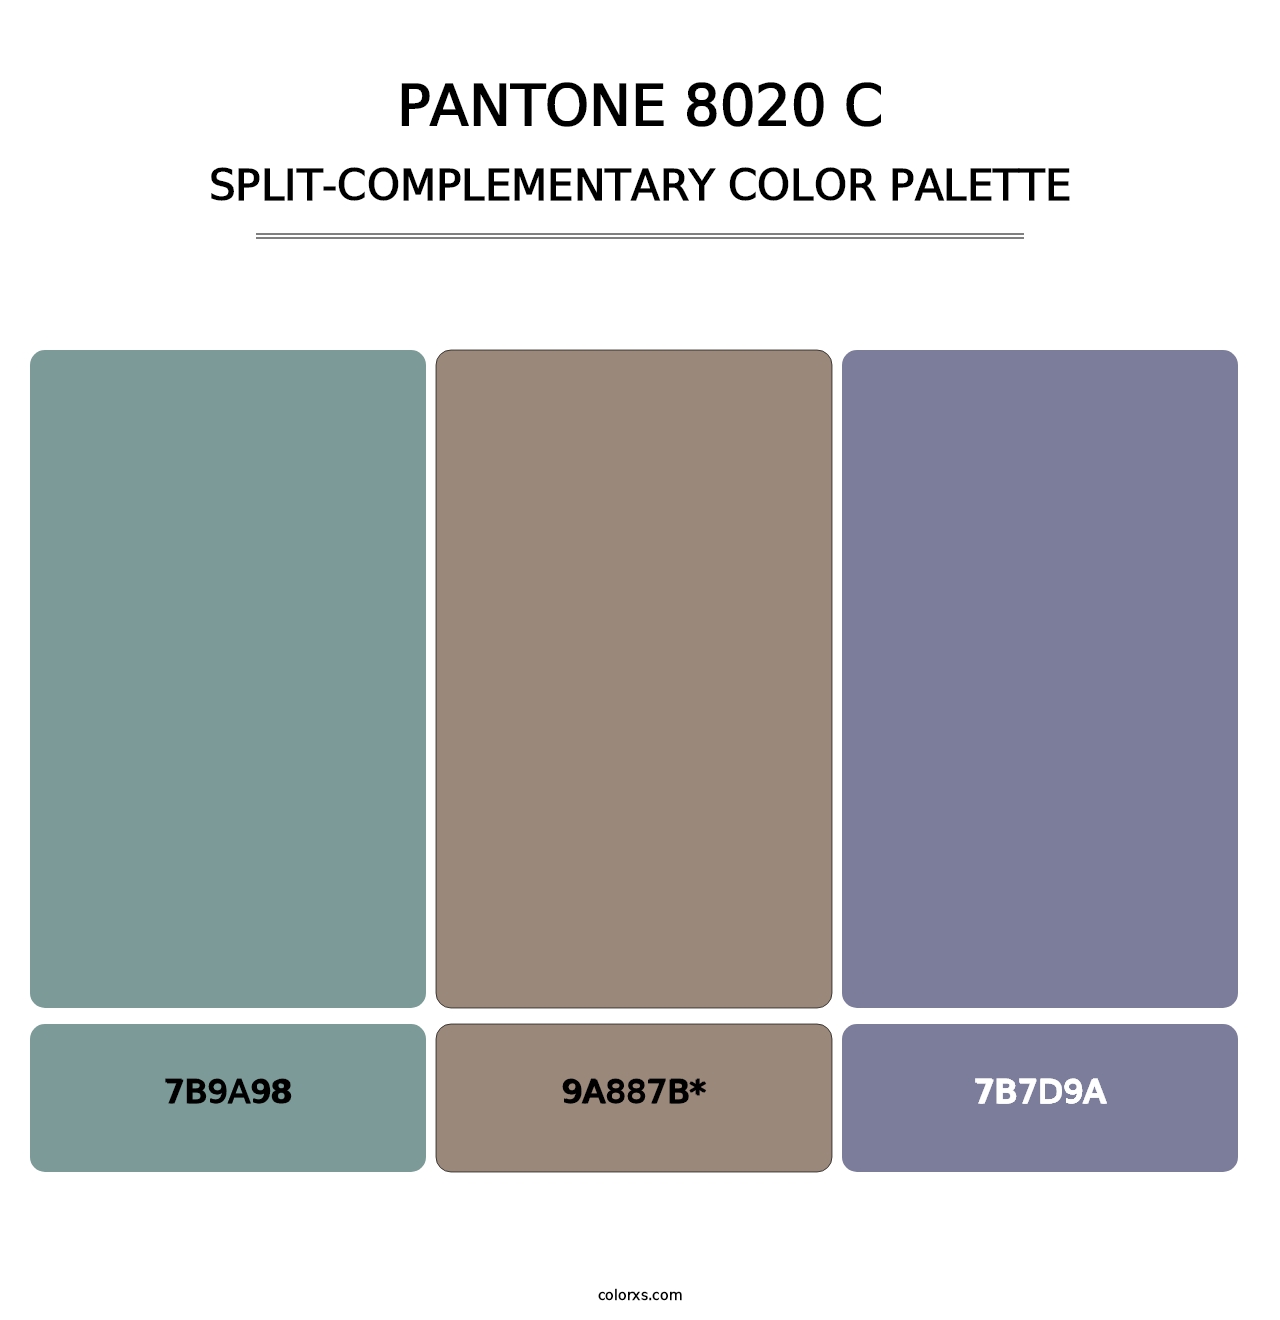 PANTONE 8020 C - Split-Complementary Color Palette